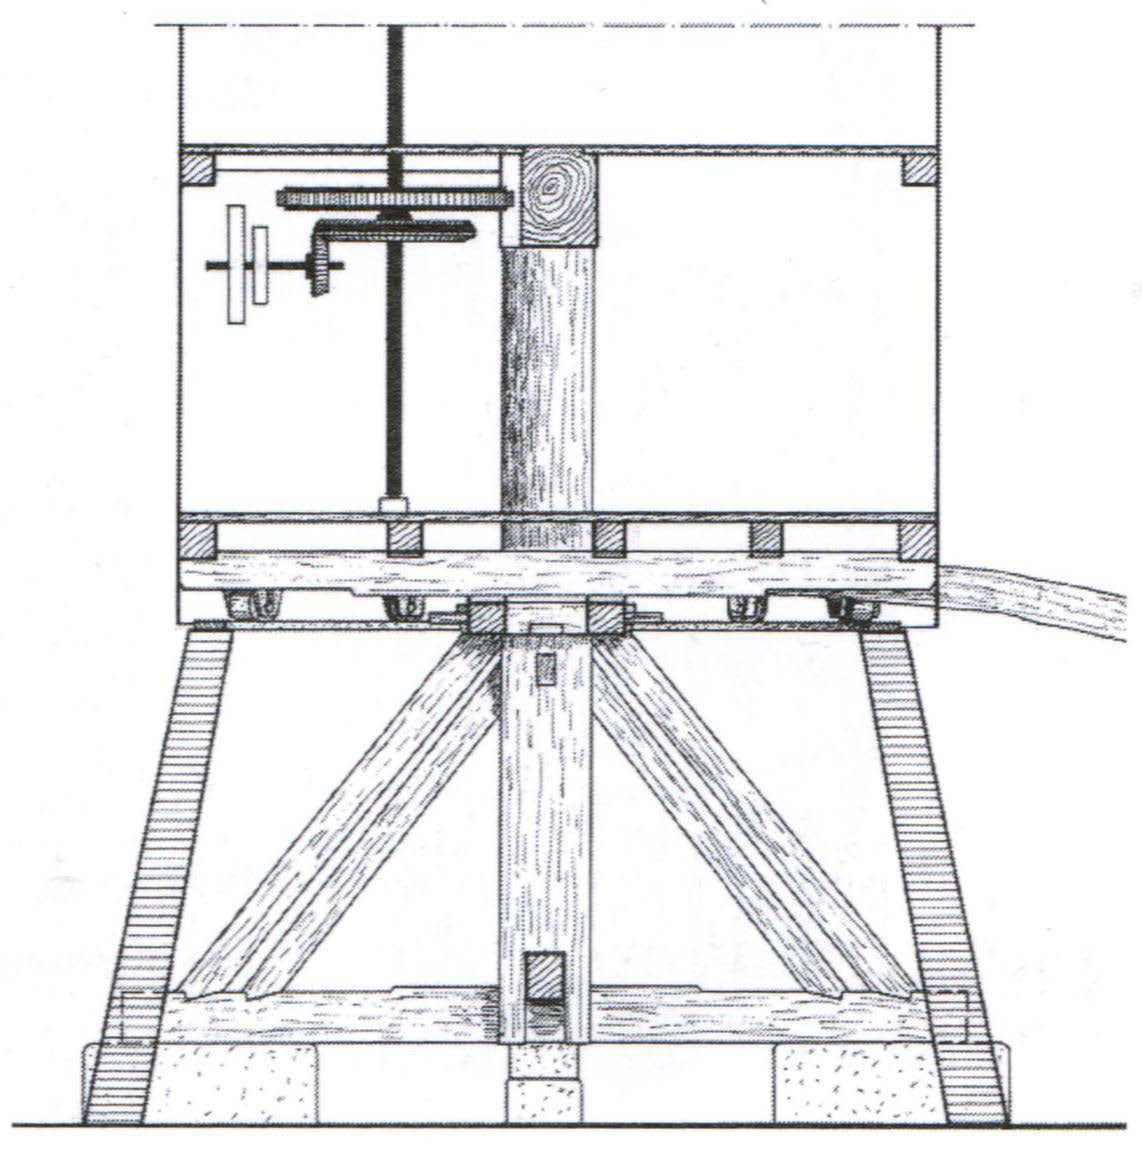 Mühle herausstehenden Ende befindet sich das Mühlenkreuz, an welchem die Mühlenflügel befestigt sind. Innerhalb der Mühle trägt sie das Kammrad.